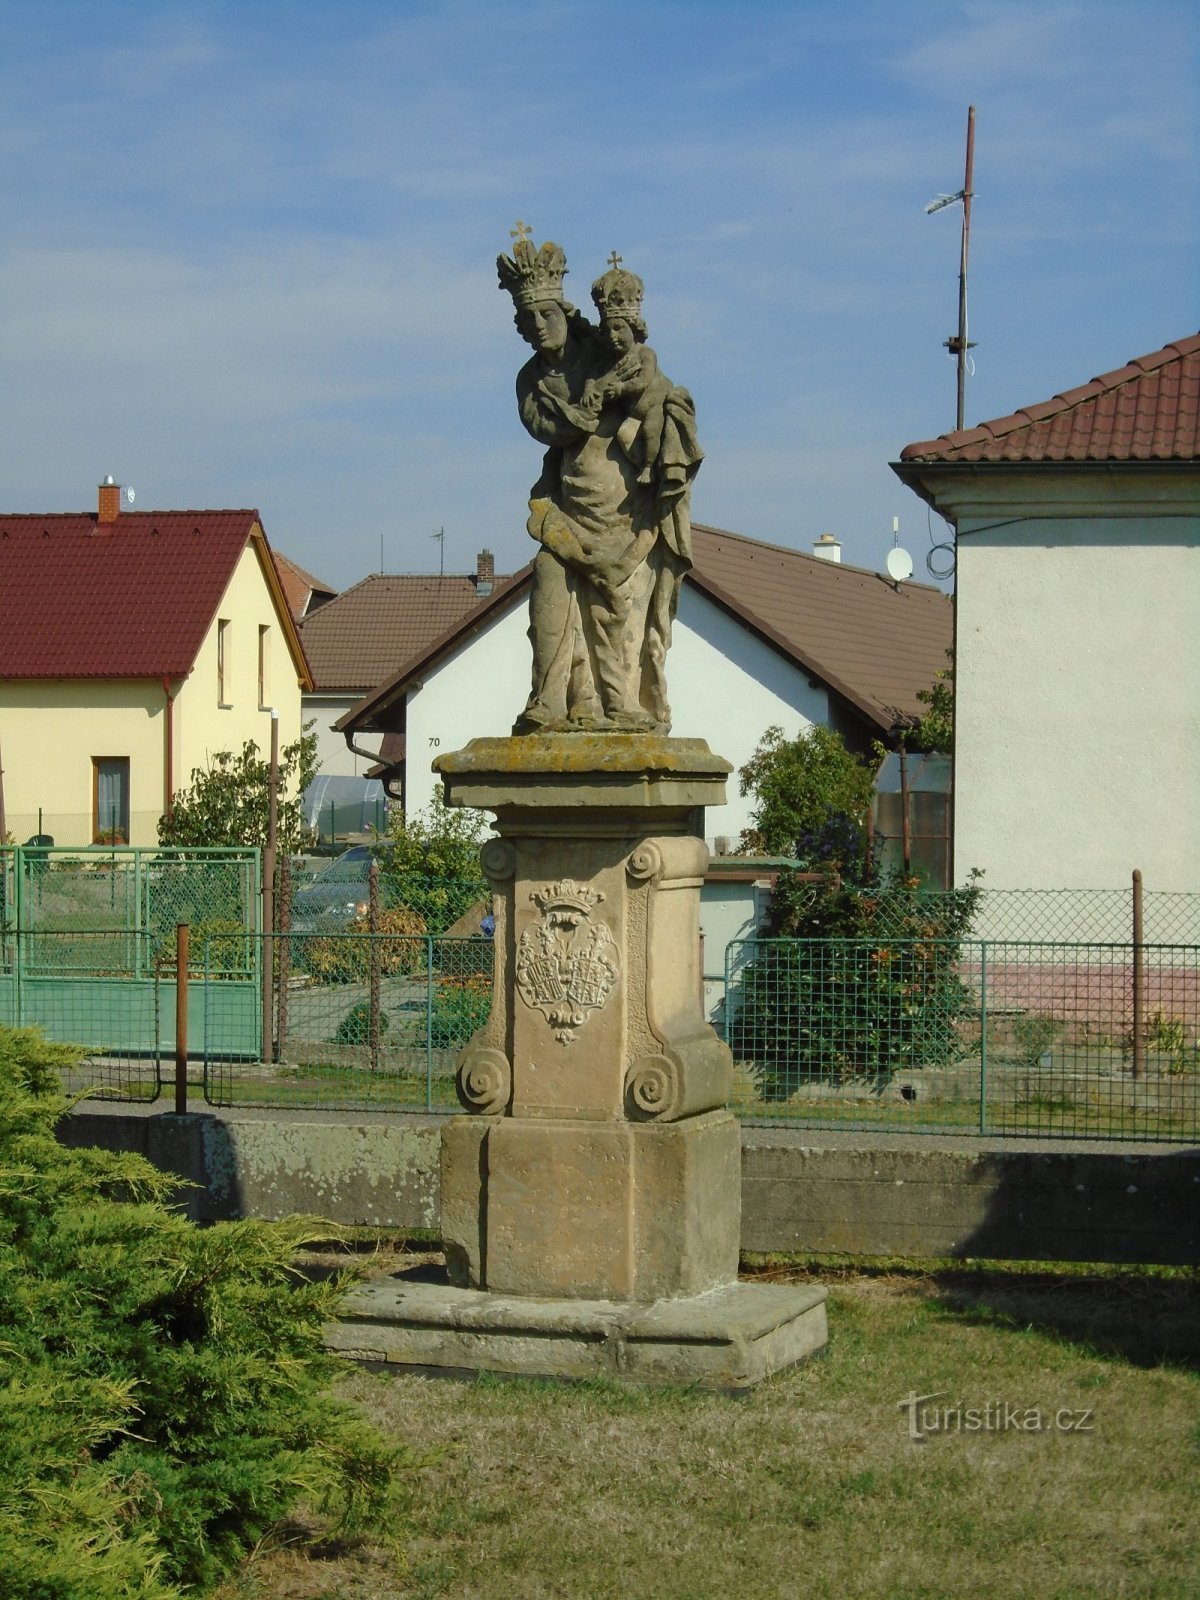 圣母玛利亚雕像 (Třesovice)